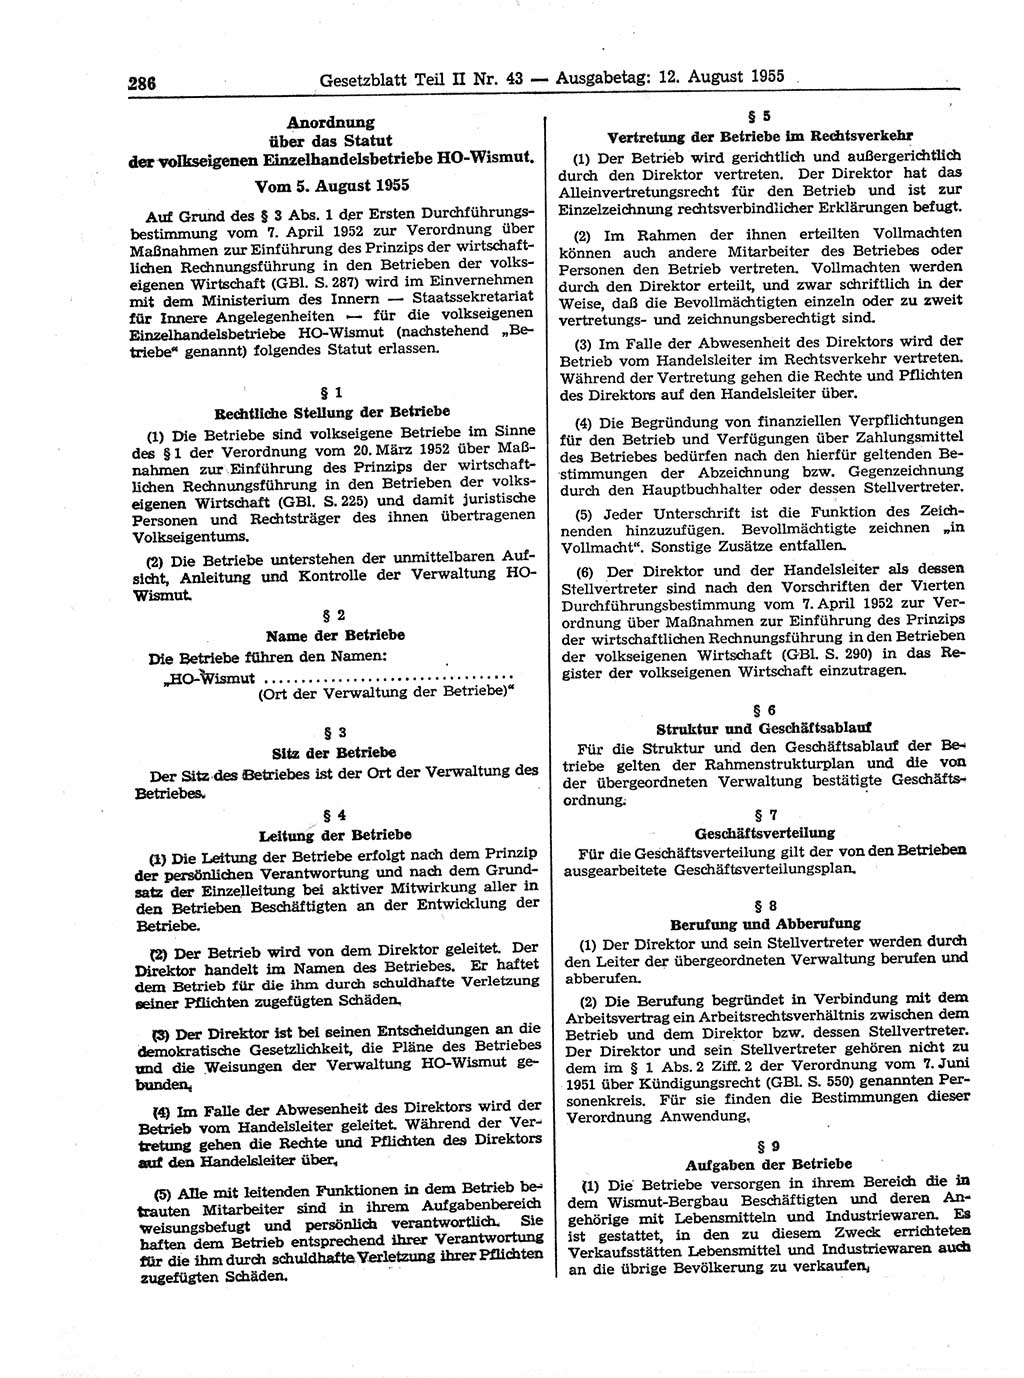 Gesetzblatt (GBl.) der Deutschen Demokratischen Republik (DDR) Teil ⅠⅠ 1955, Seite 286 (GBl. DDR ⅠⅠ 1955, S. 286)